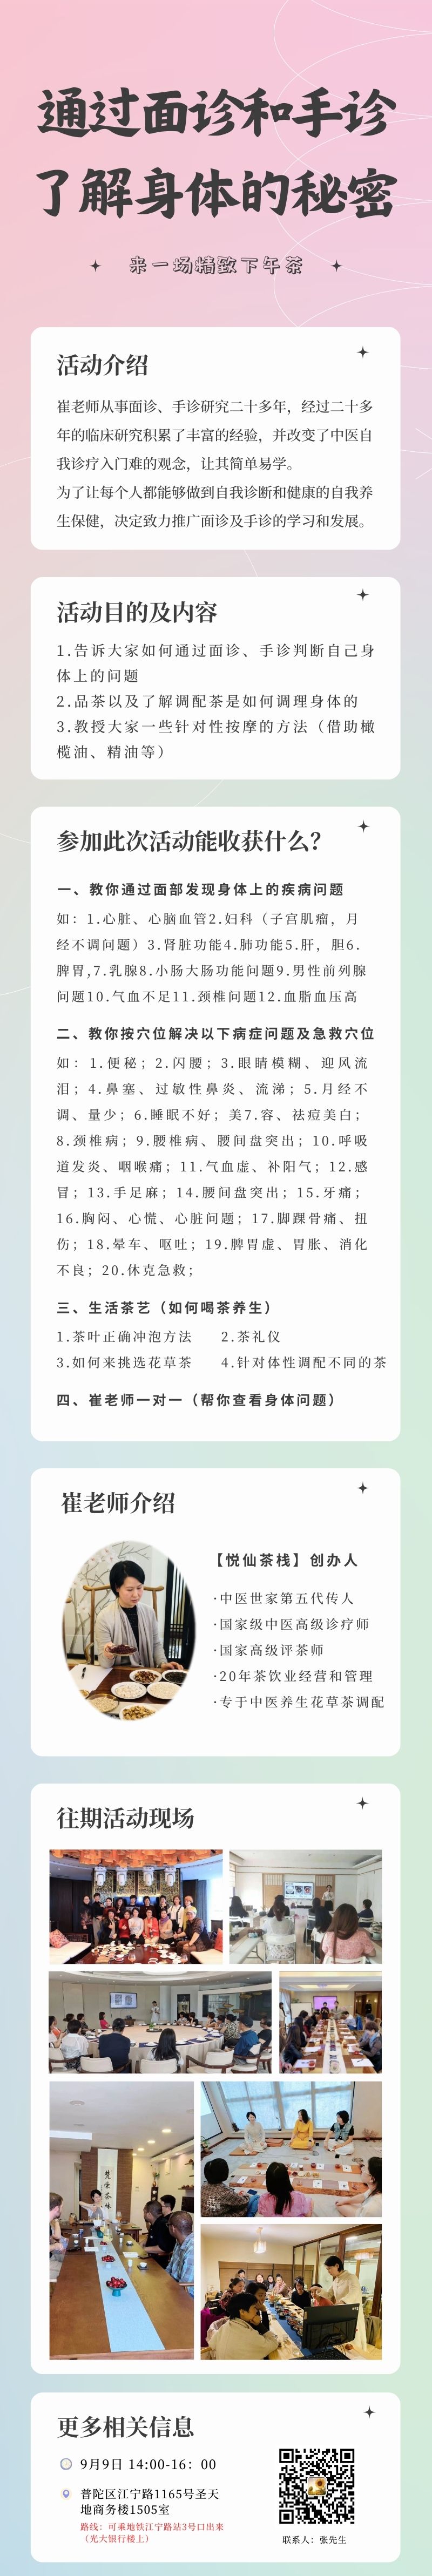 粉蓝紫色校园艺术节精致校园宣传中文信息图表.jpg